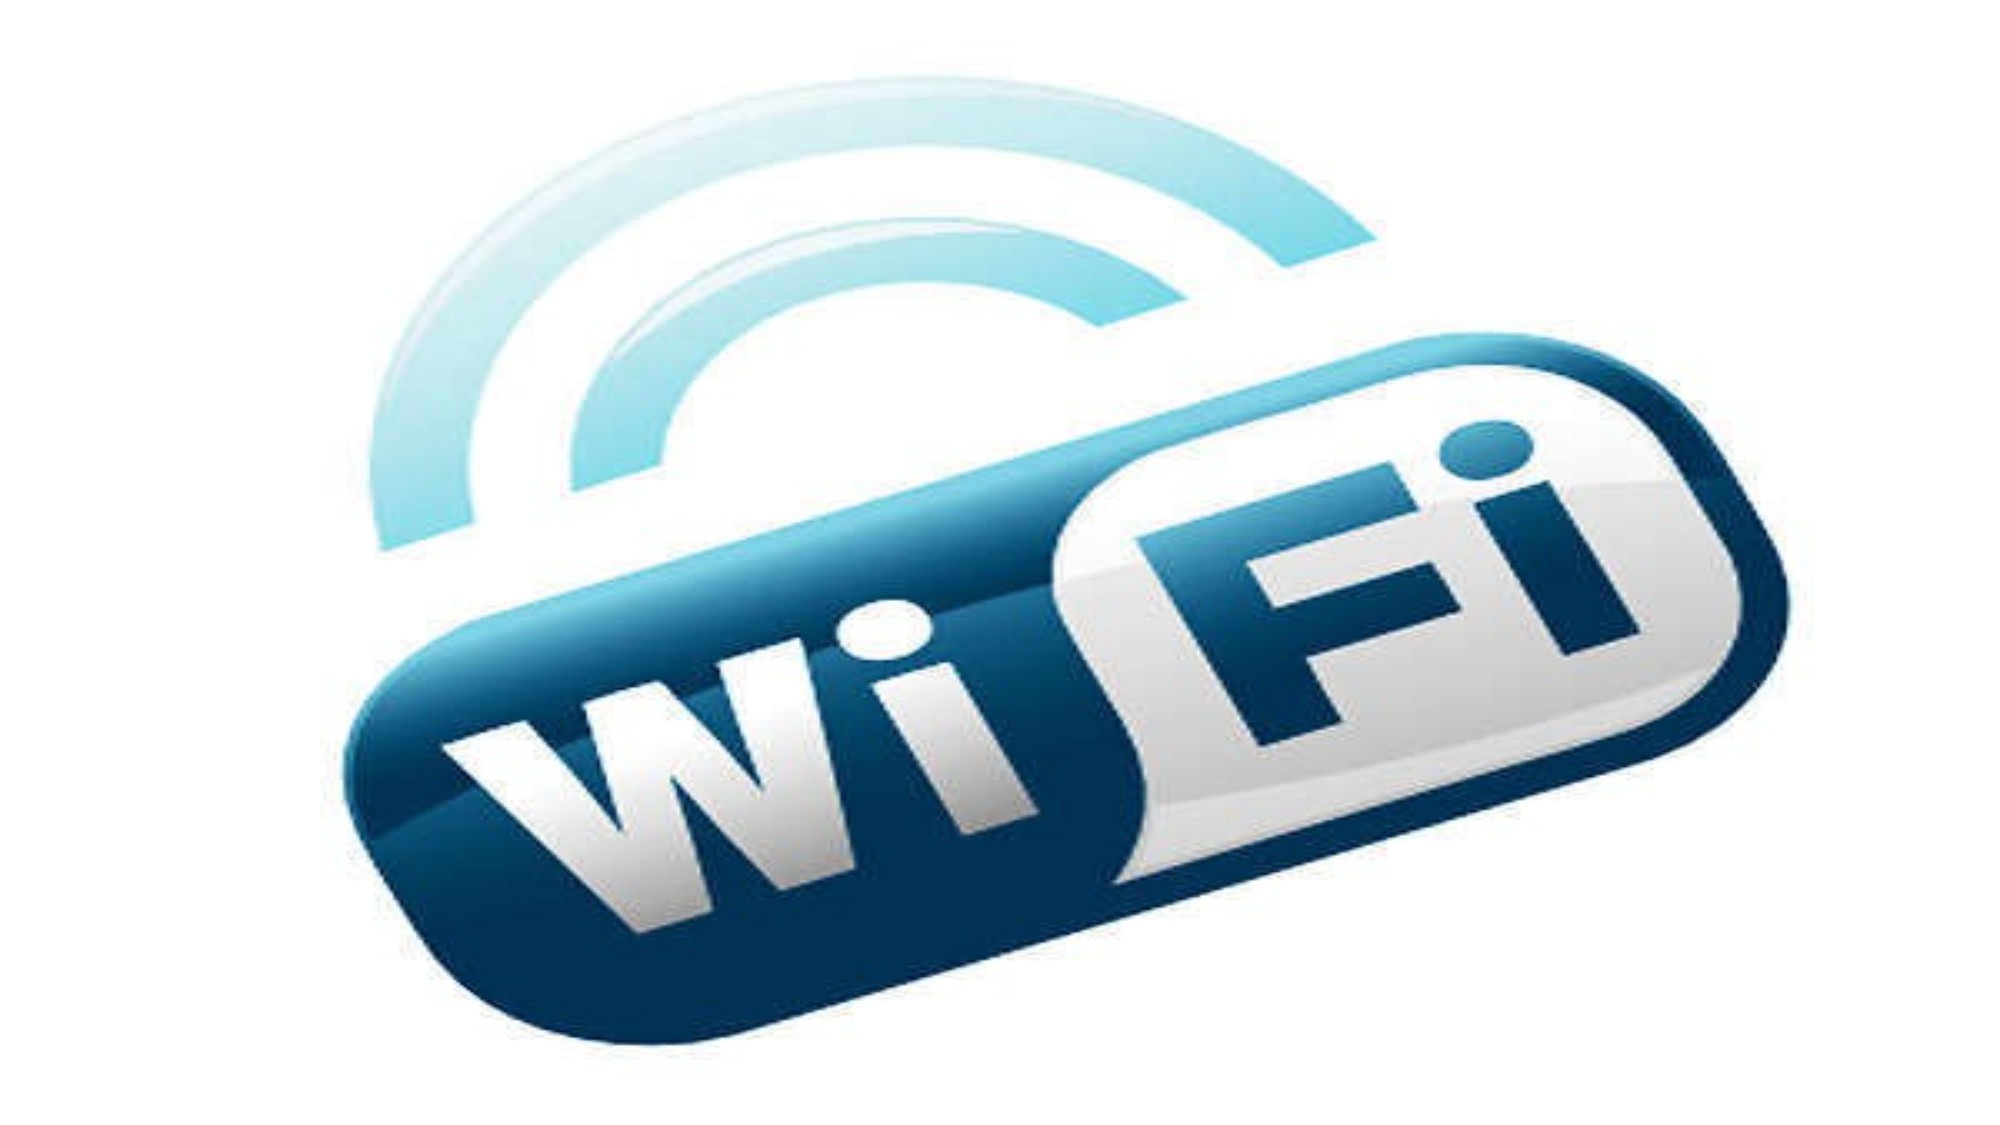 全館どこでも、Wi-Fi通信可能です。